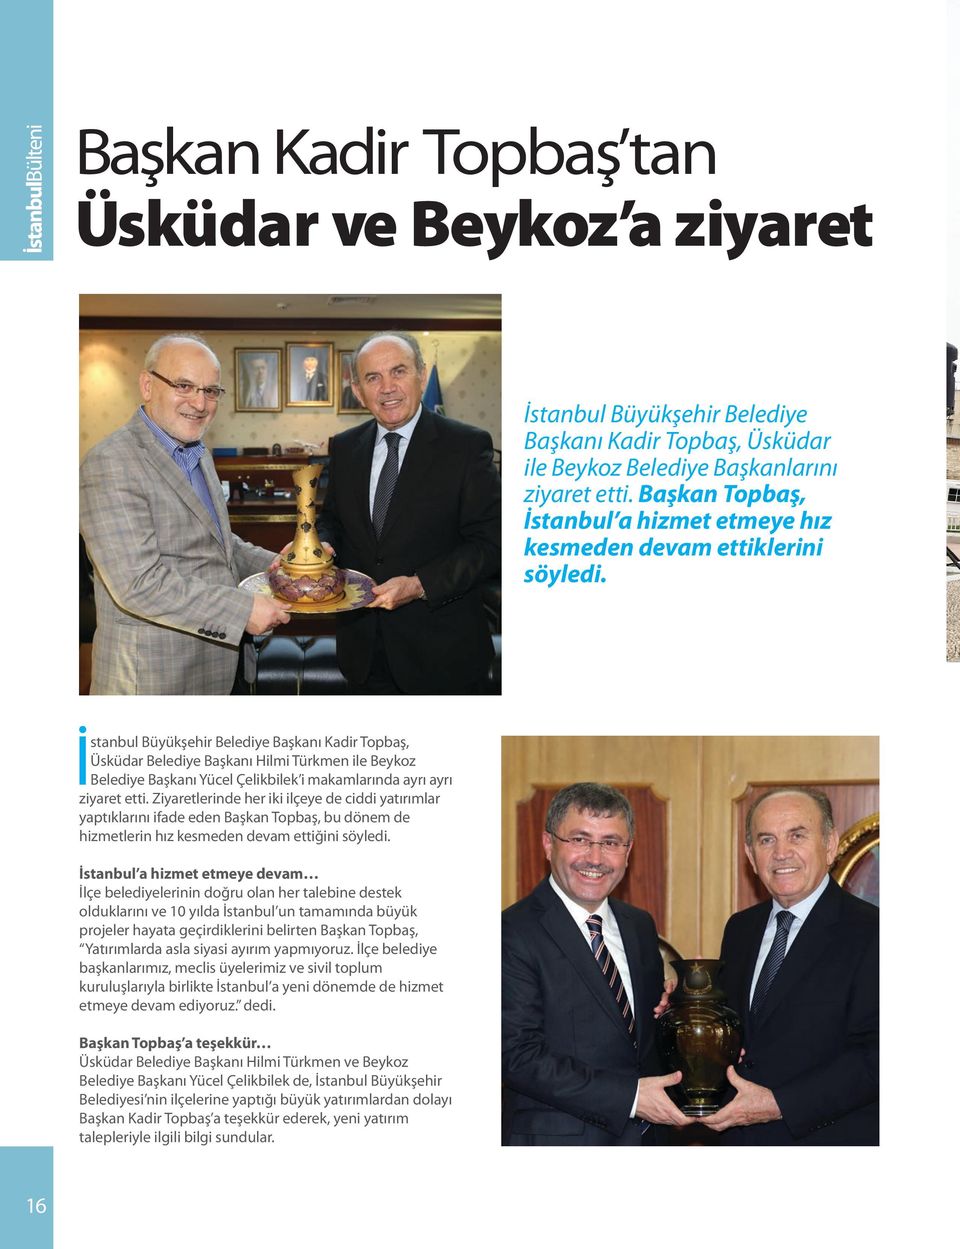 İstanbul Büyükşehir Belediye Başkanı Kadir Topbaş, Üsküdar Belediye Başkanı Hilmi Türkmen ile Beykoz Belediye Başkanı Yücel Çelikbilek i makamlarında ayrı ayrı ziyaret etti.